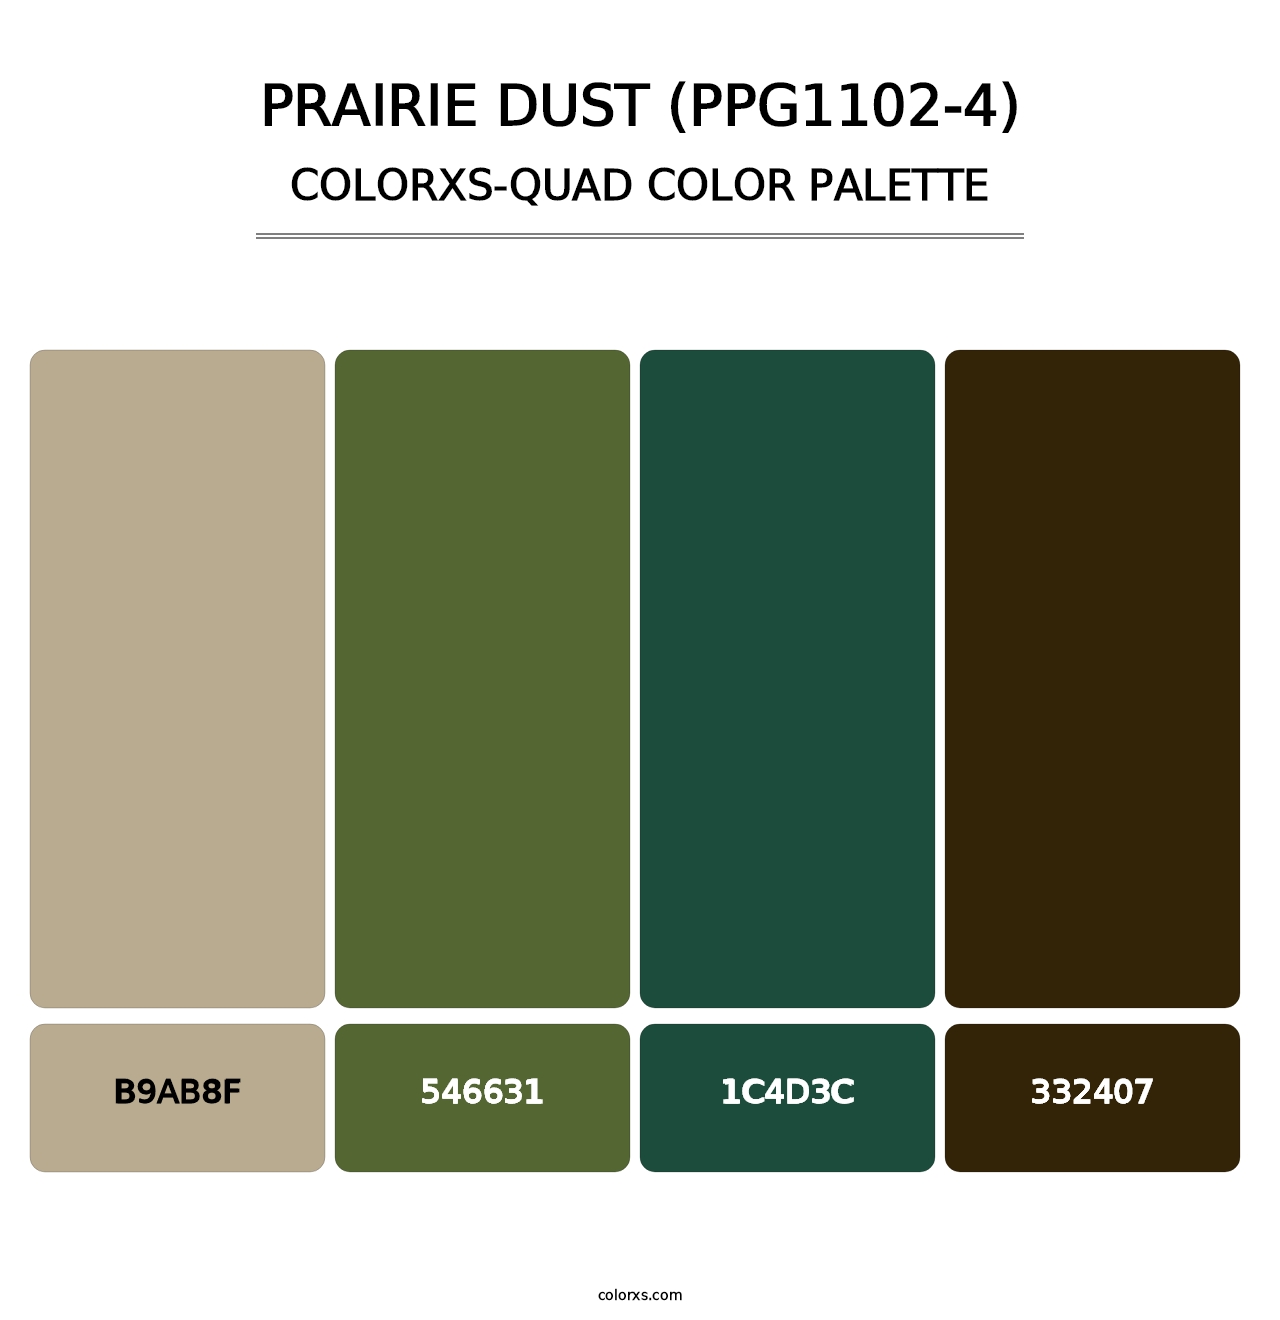 Prairie Dust (PPG1102-4) - Colorxs Quad Palette